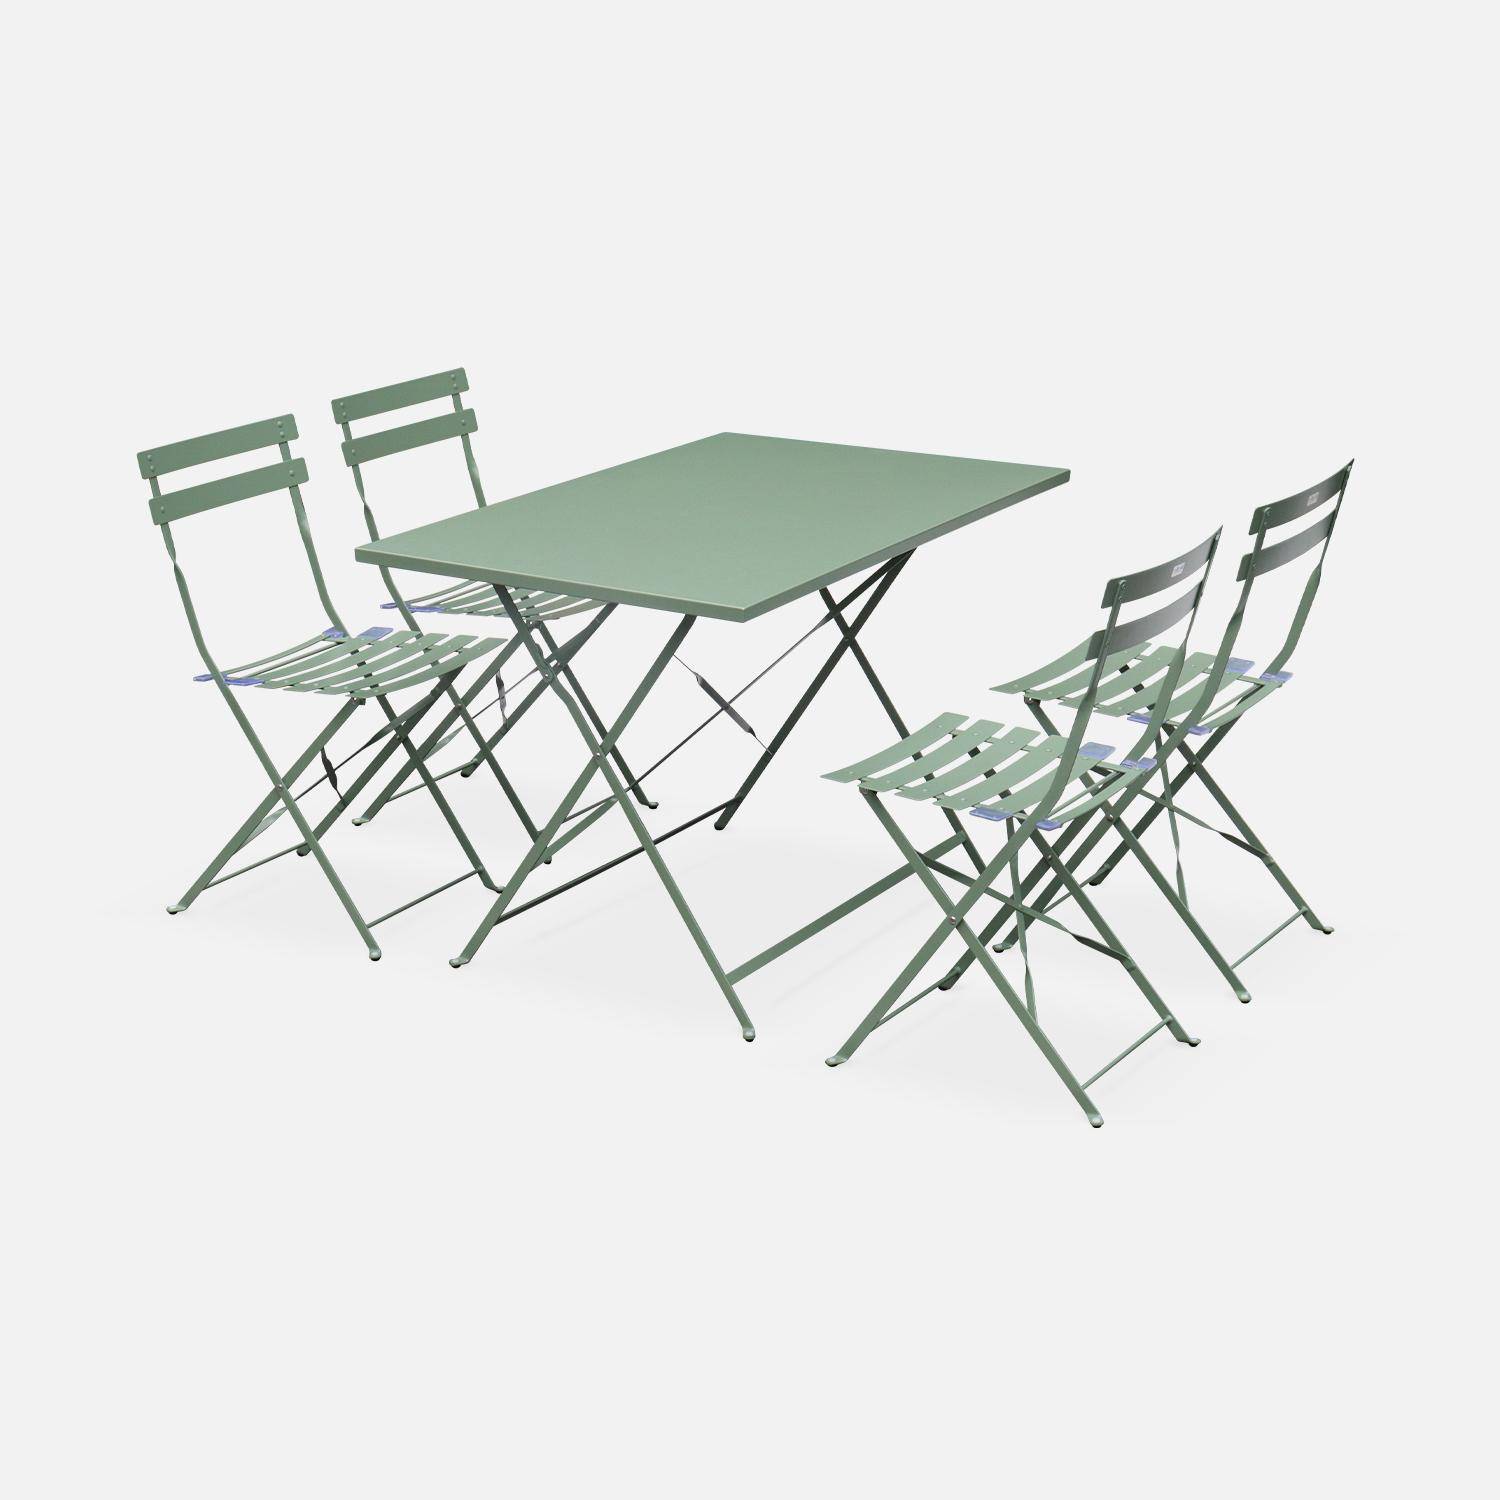 Klappbare Bistro-Gartengarnitur - Rechteckig Emilia graugrün - 110 x 70 cm großer Tisch mit vier Klappstühlen aus pulverbeschichtetem Stahl Photo1